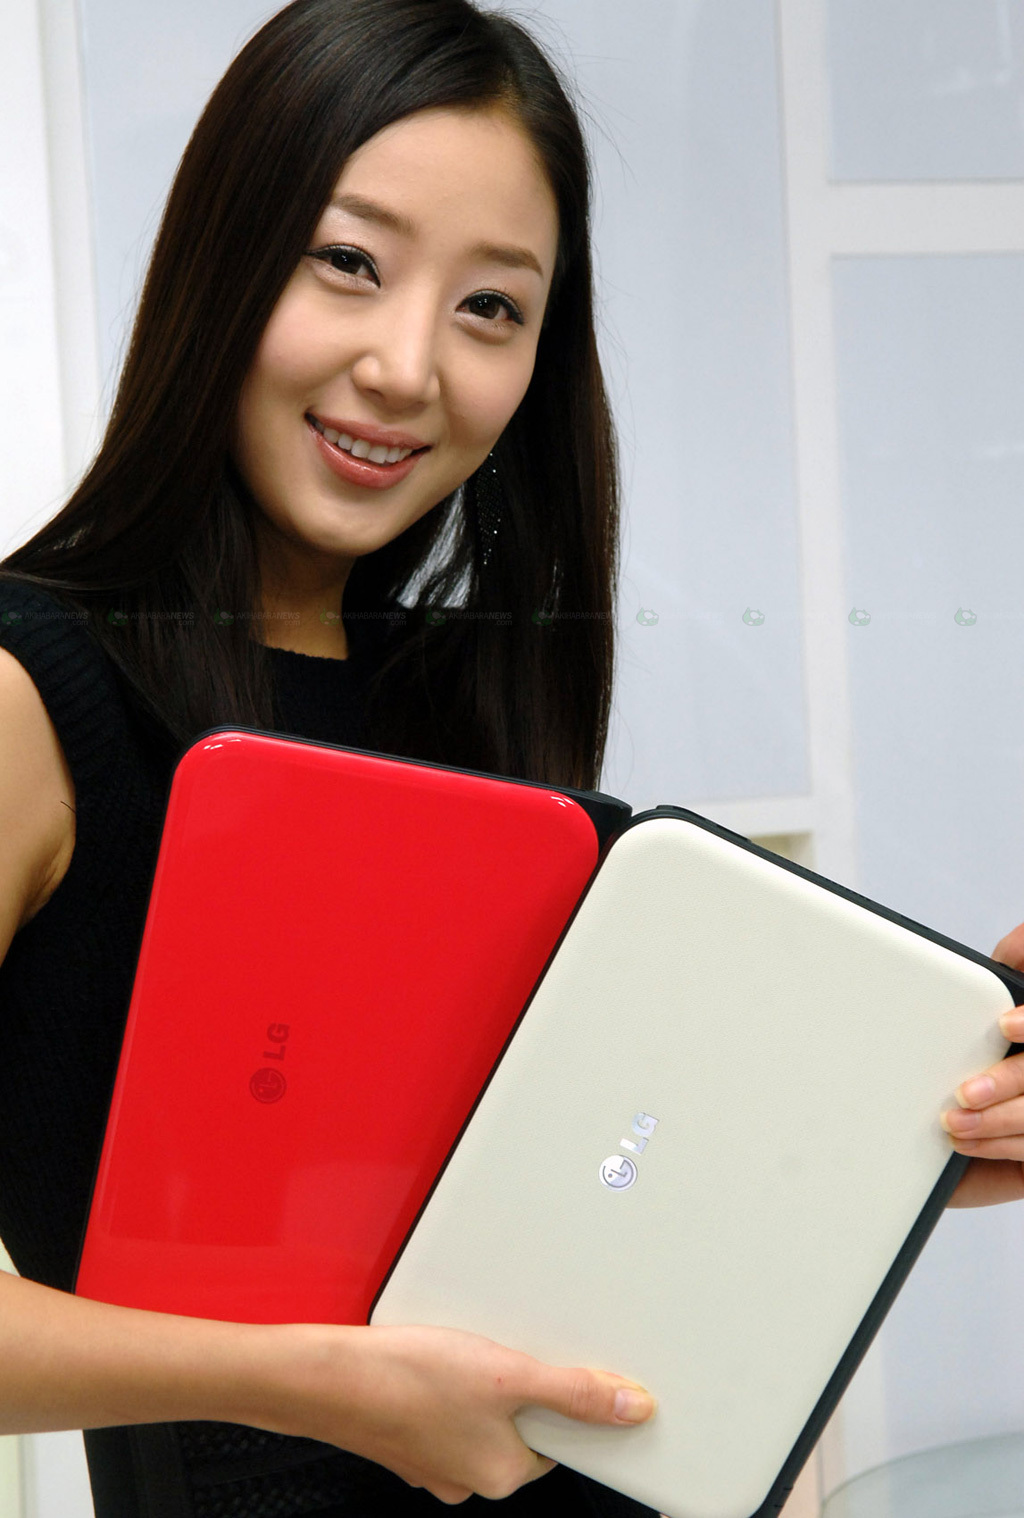 LG'nin yeni netbook modeli X170 tanıtıldı